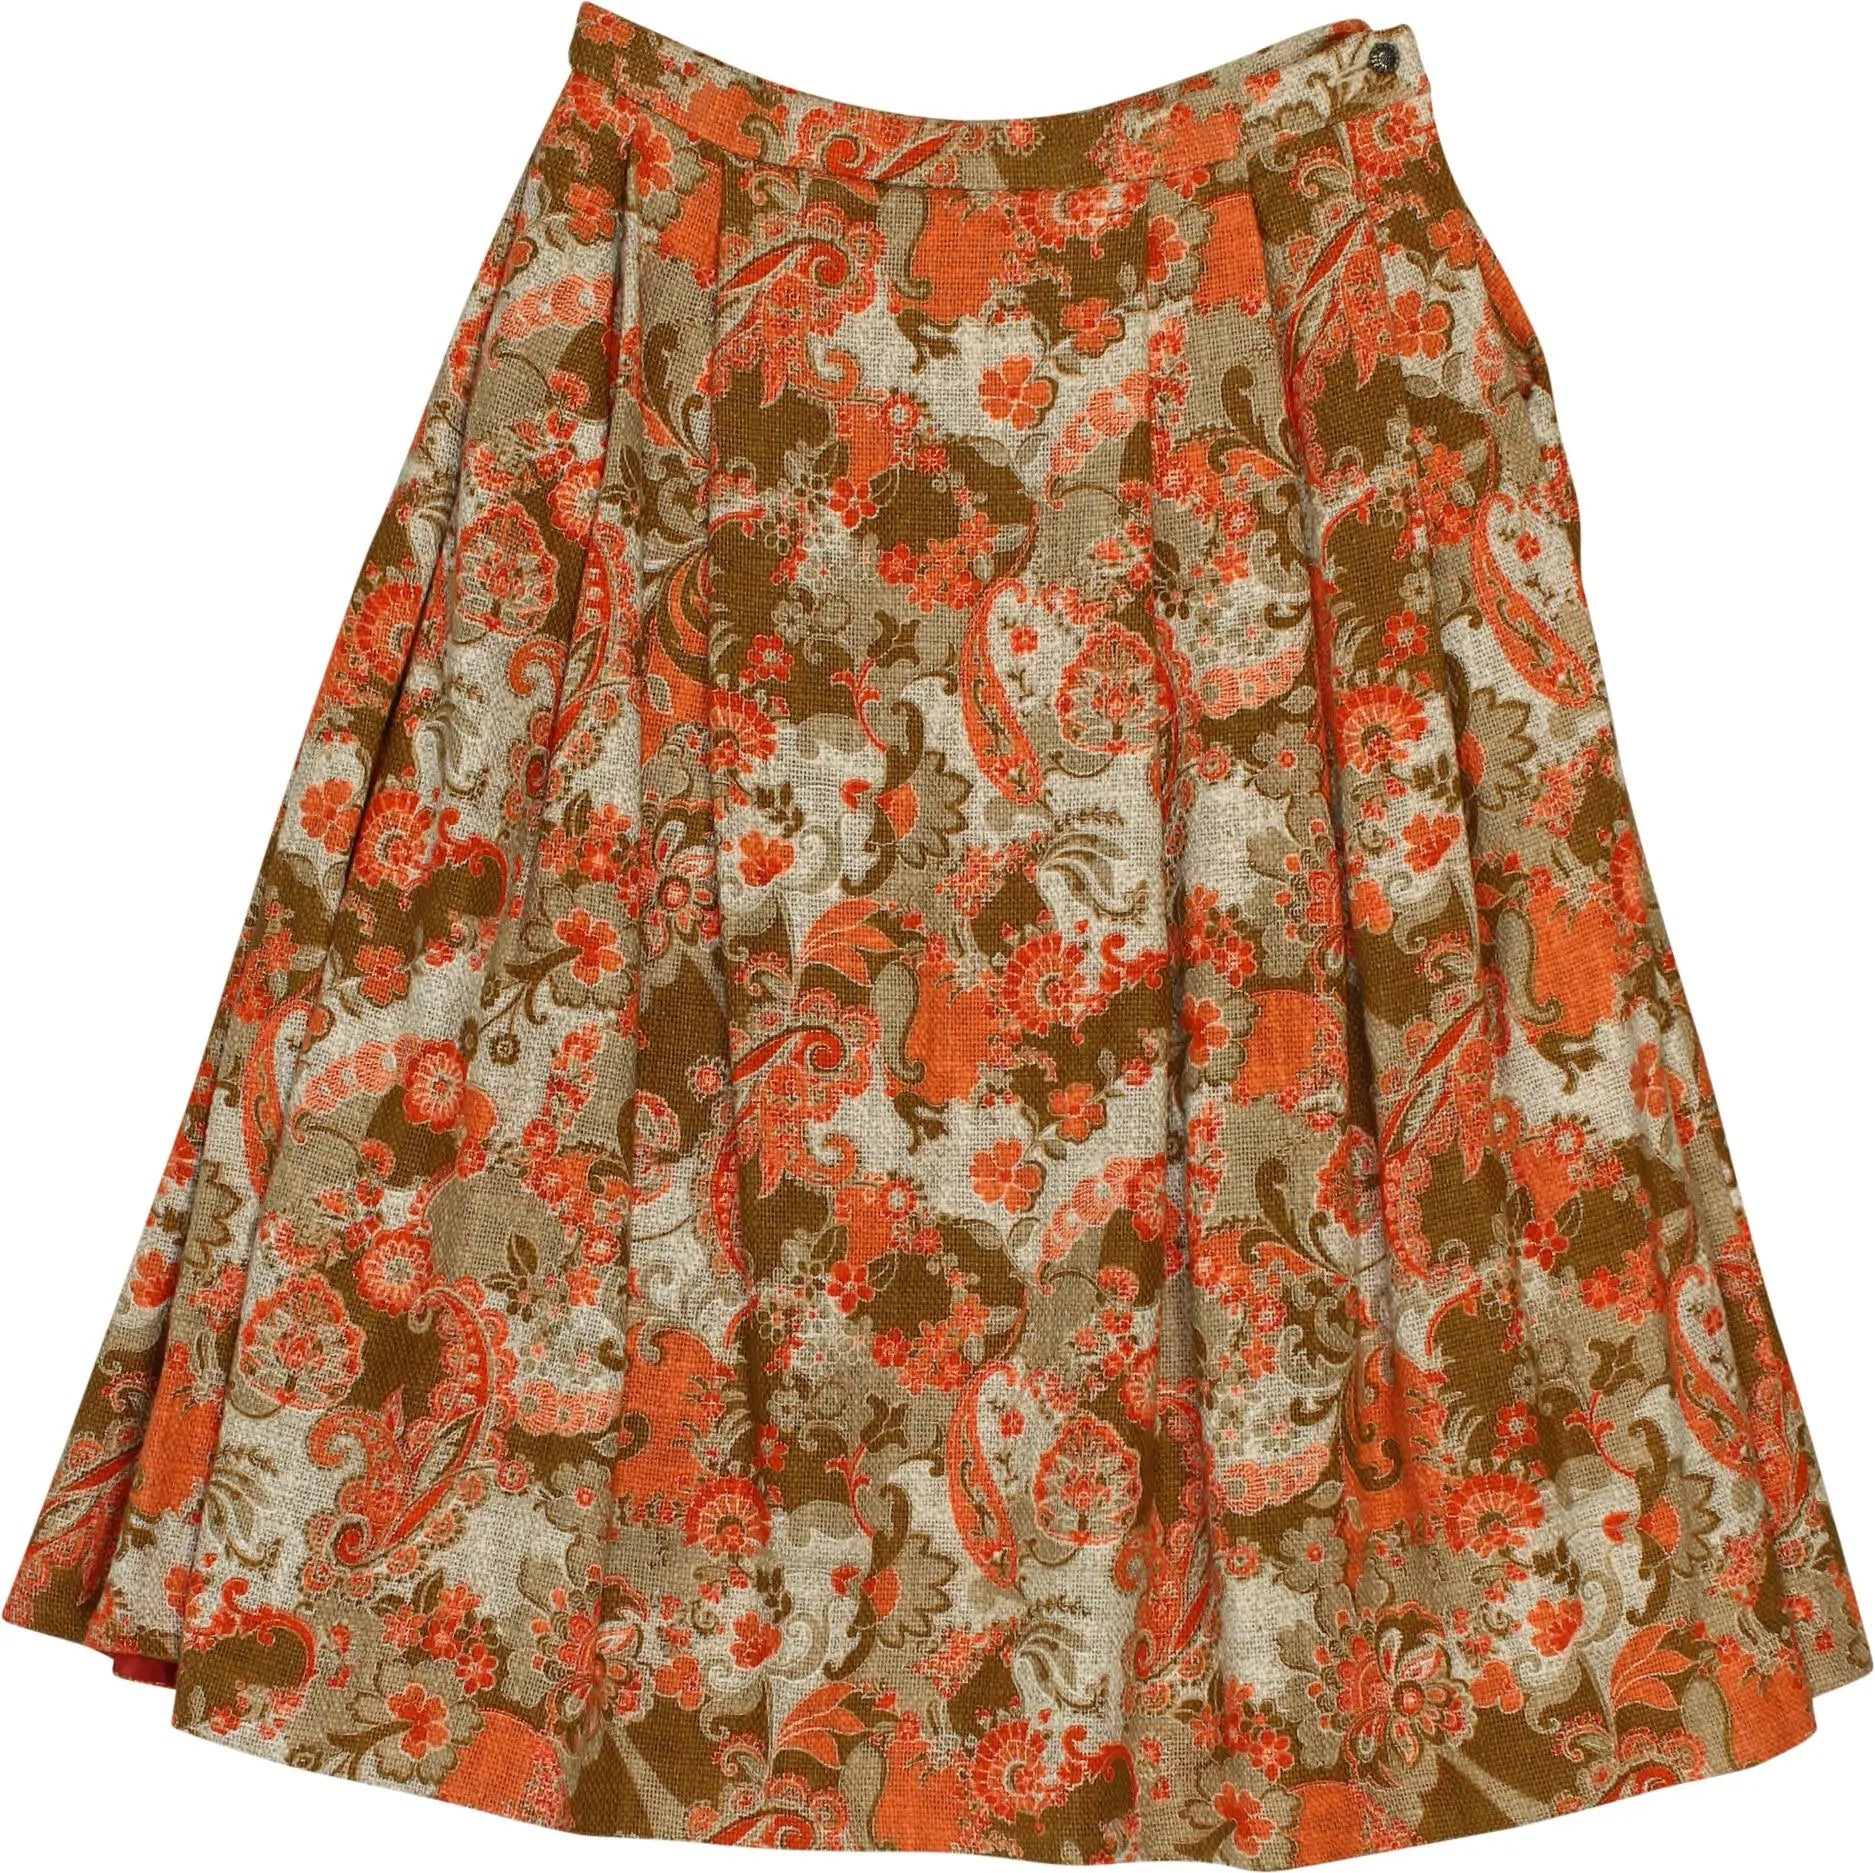 Kobler Dirndl - Midi Skirt- ThriftTale.com - Vintage and second handclothing